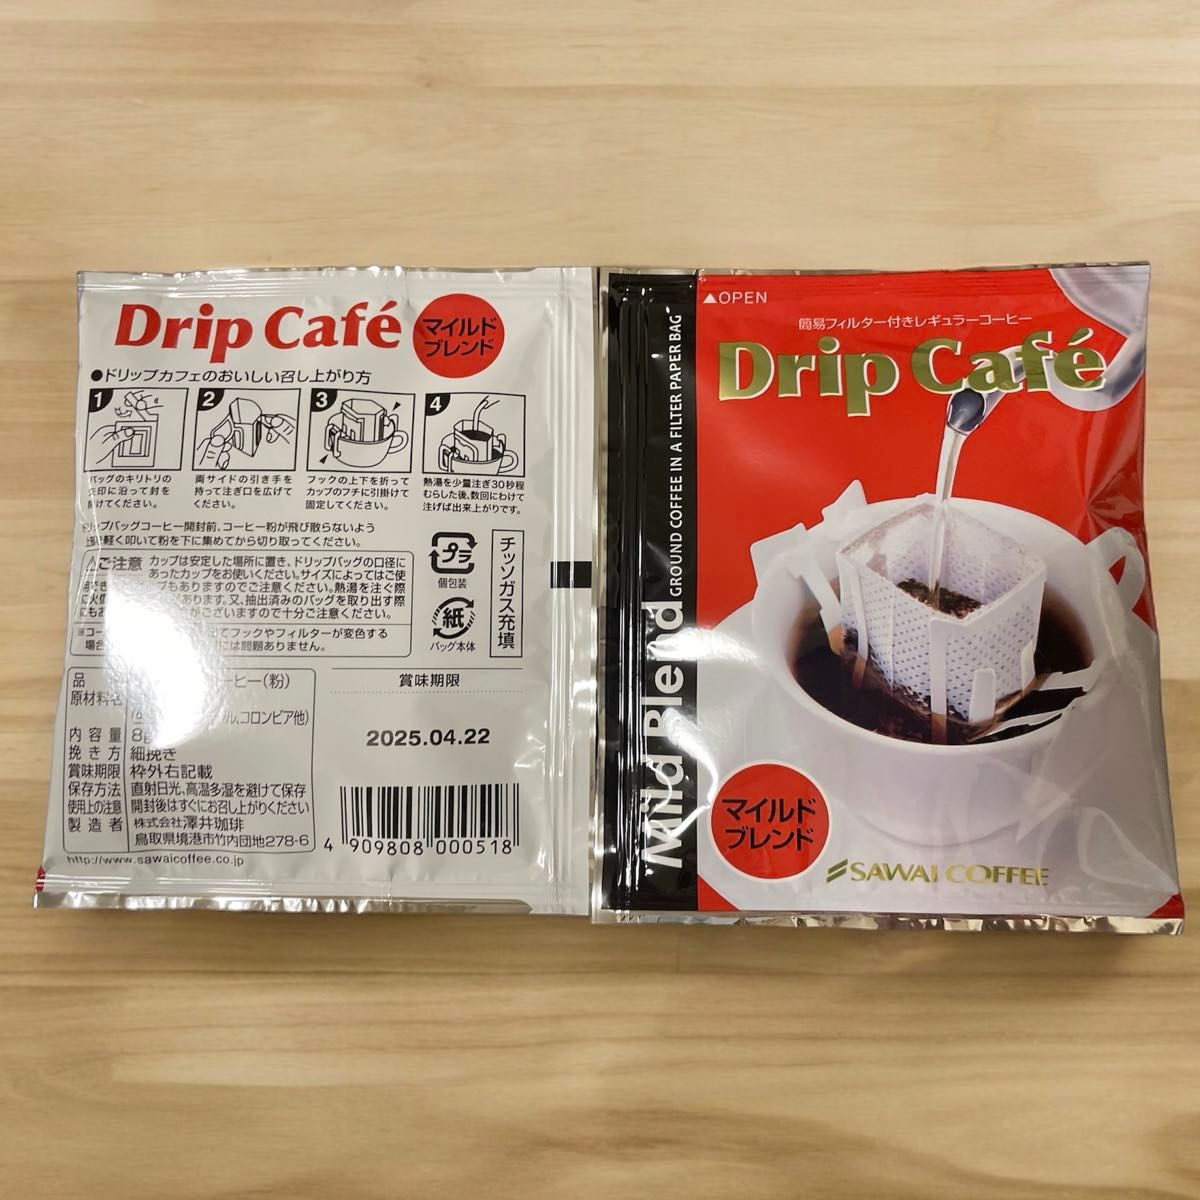 マイルドブレンド 澤井珈琲 ドリップ コーヒー 30袋セット